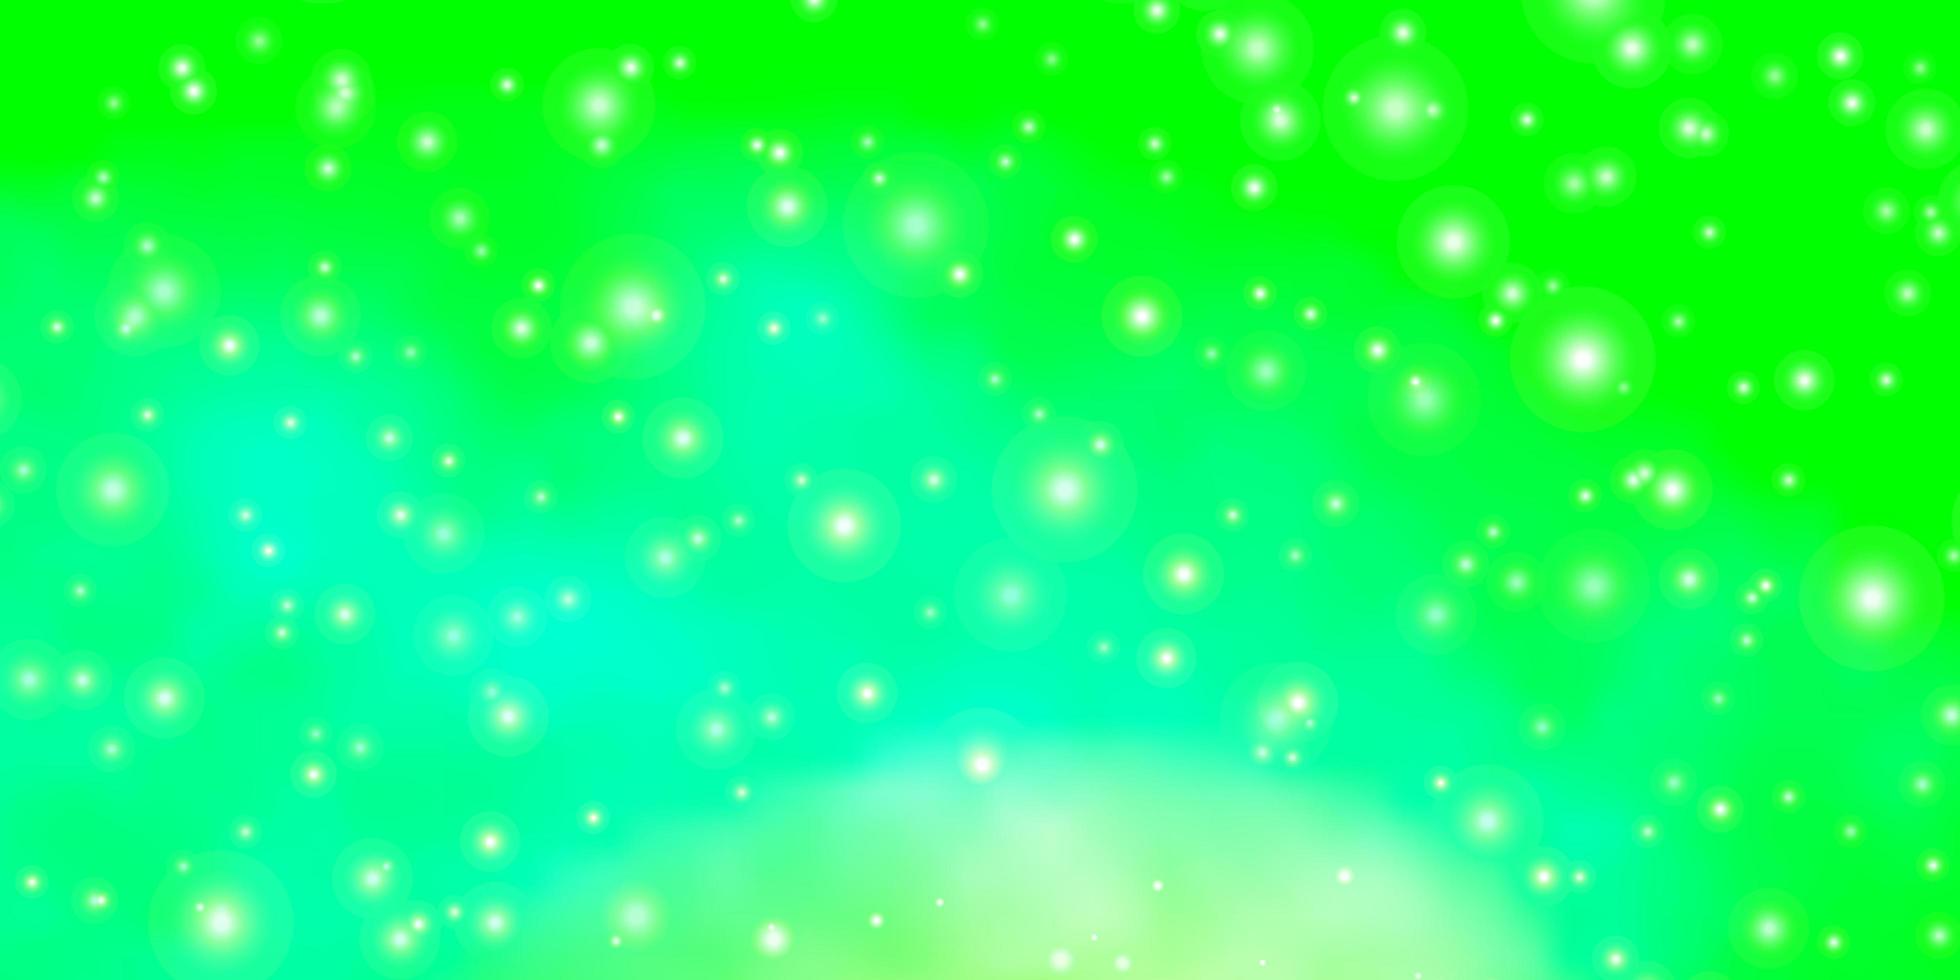 ljusgrön bakgrund med små och stora stjärnor. vektor